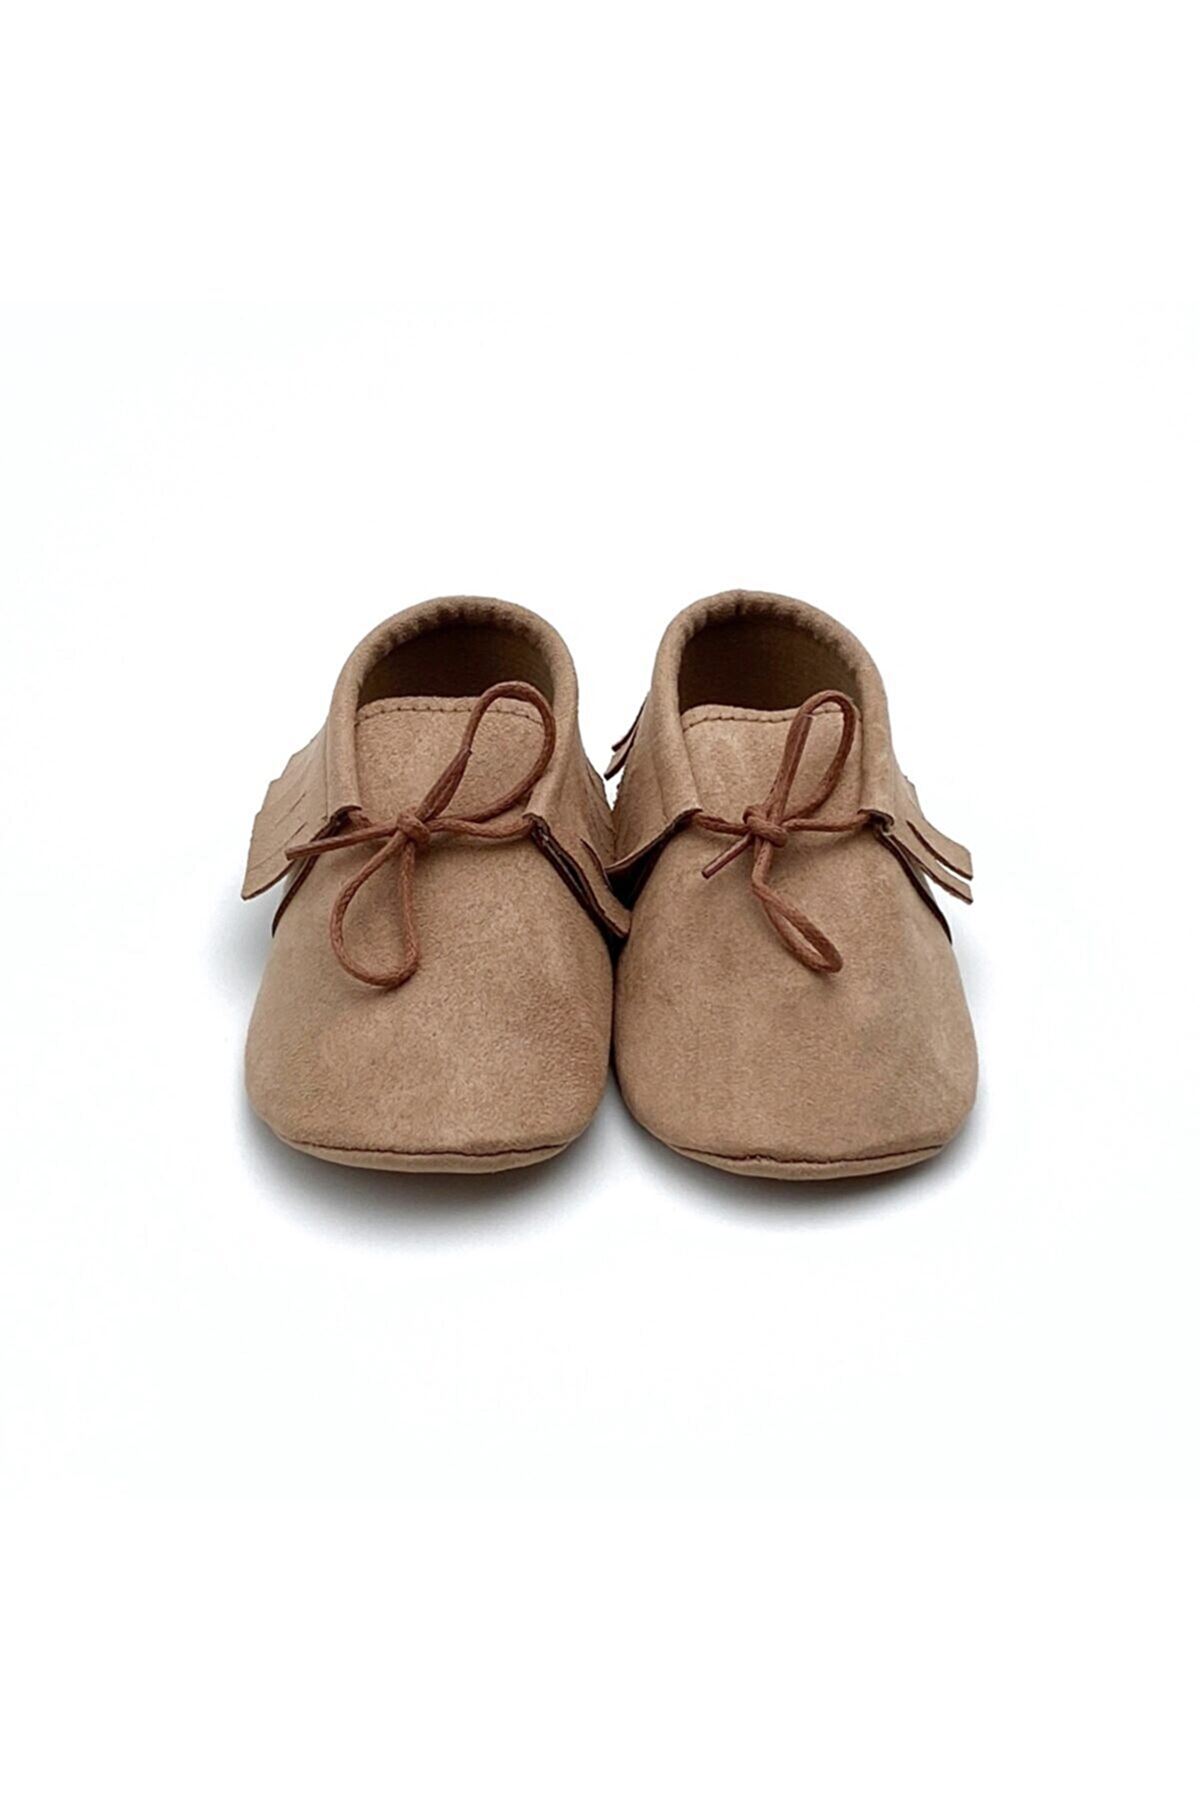 Baby Tuğra Elyapımı  Bağcıklı Makosen Süet Patik Bebek Ayakkabı-Devetüyü